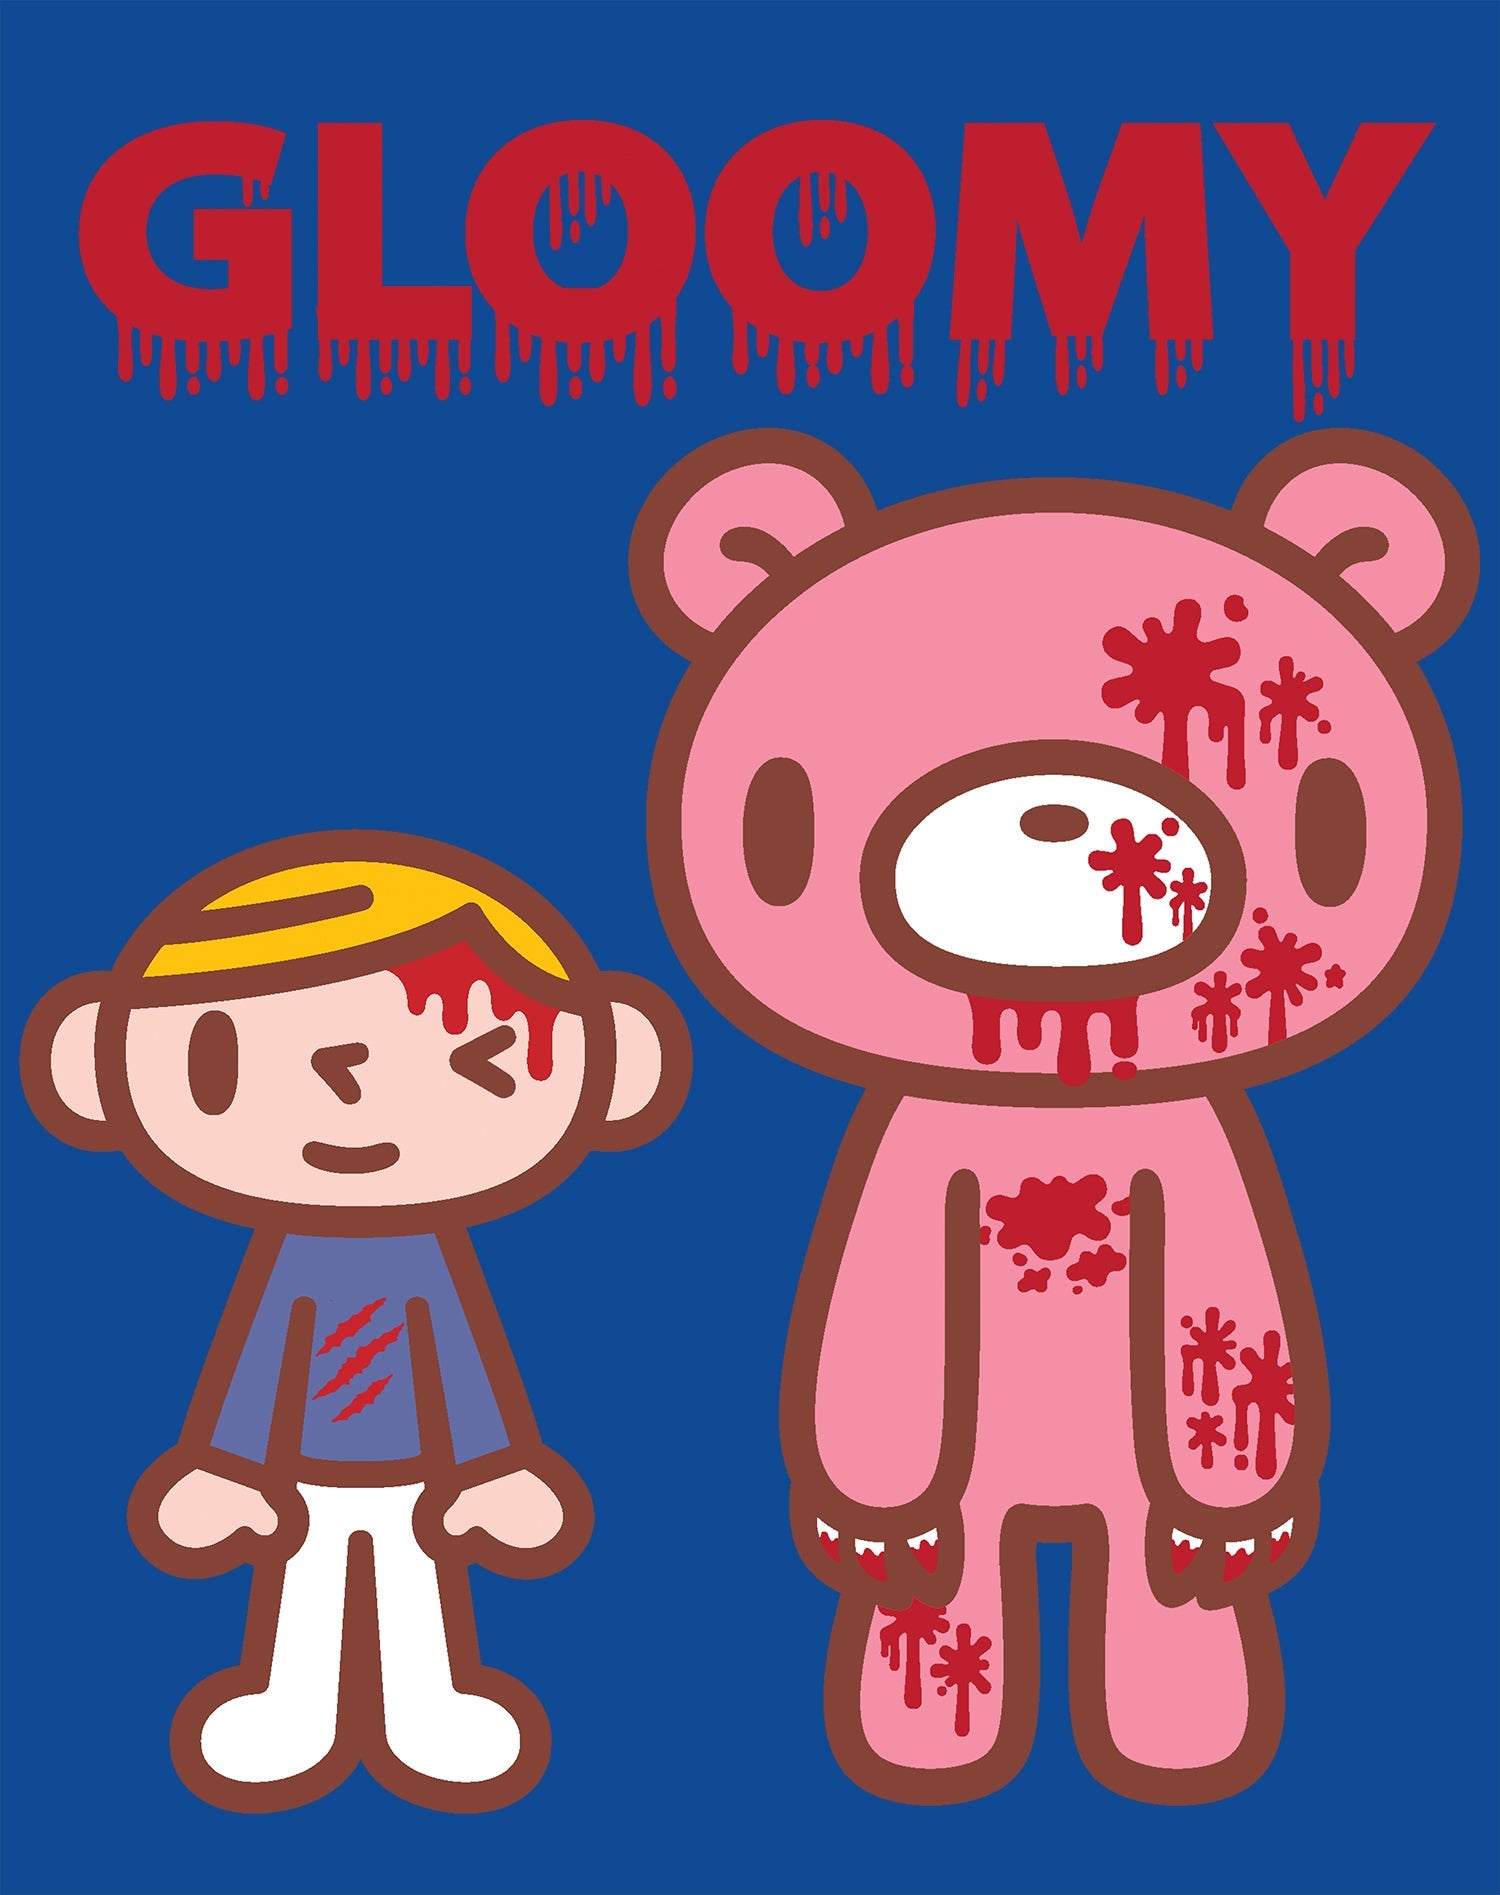 Gloomy Bear Blood Splatter Official Women's T-shirt